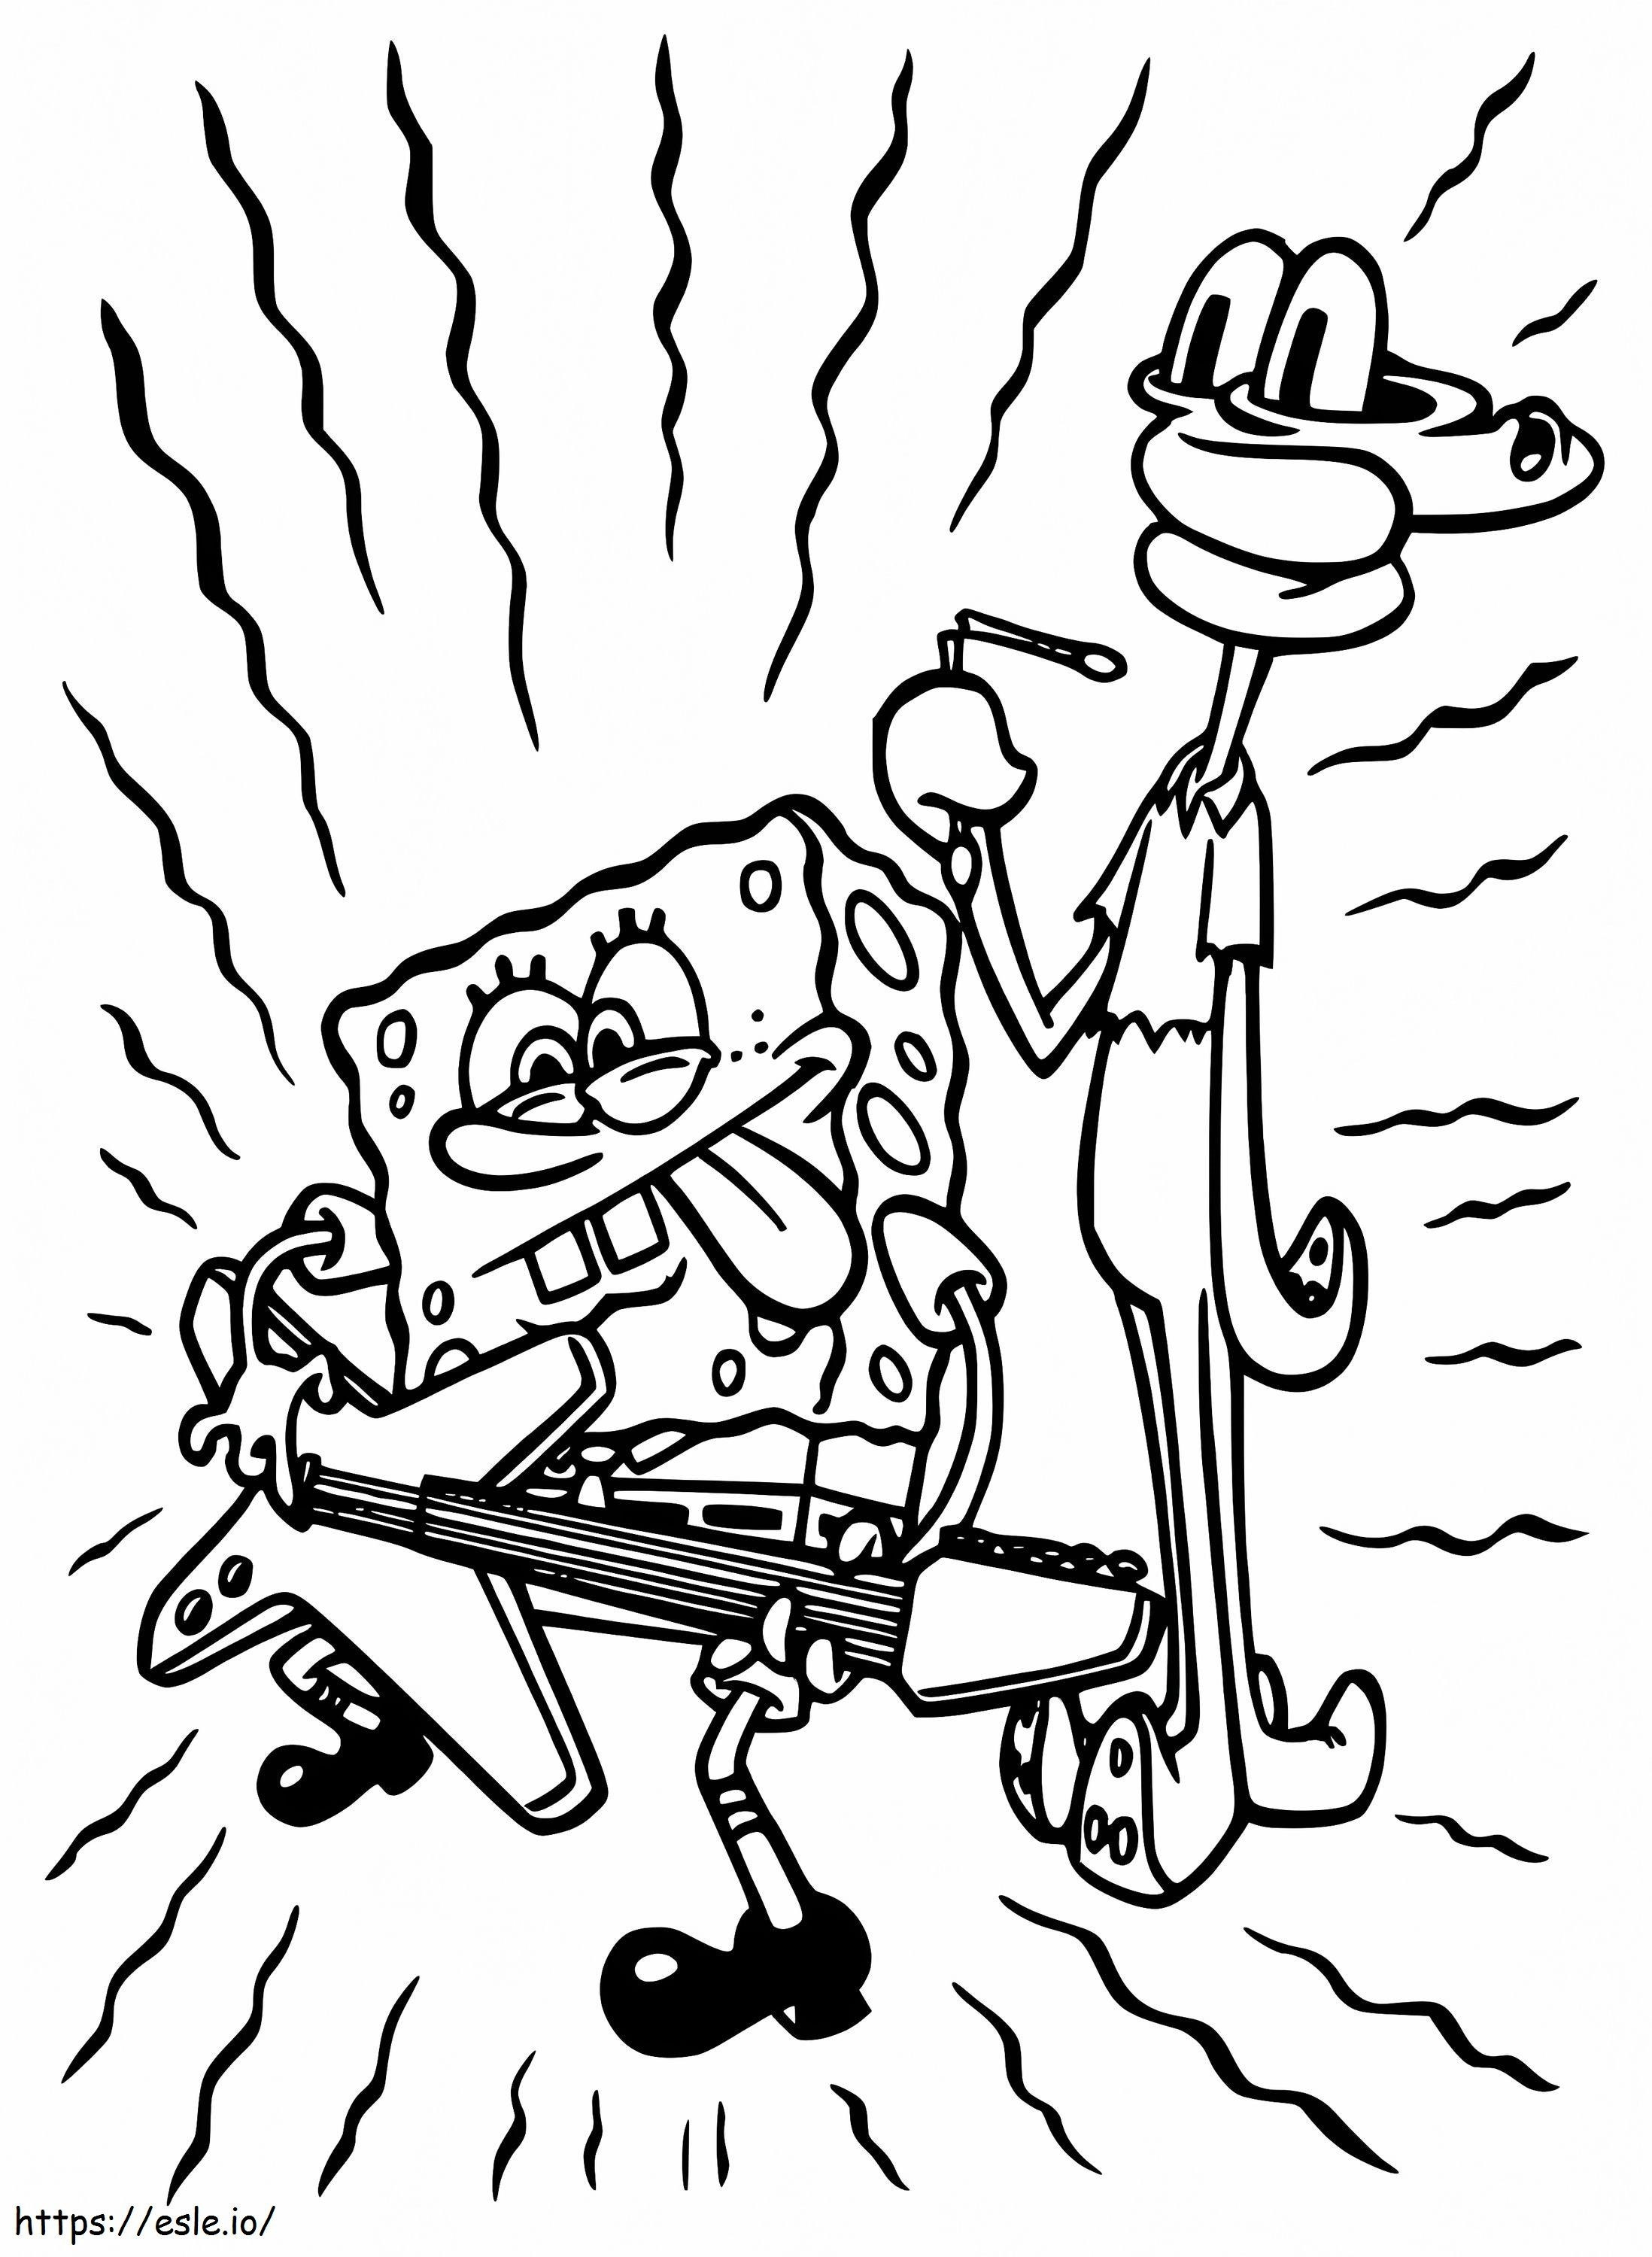 Spongebob dan Squidward Gambar Mewarnai